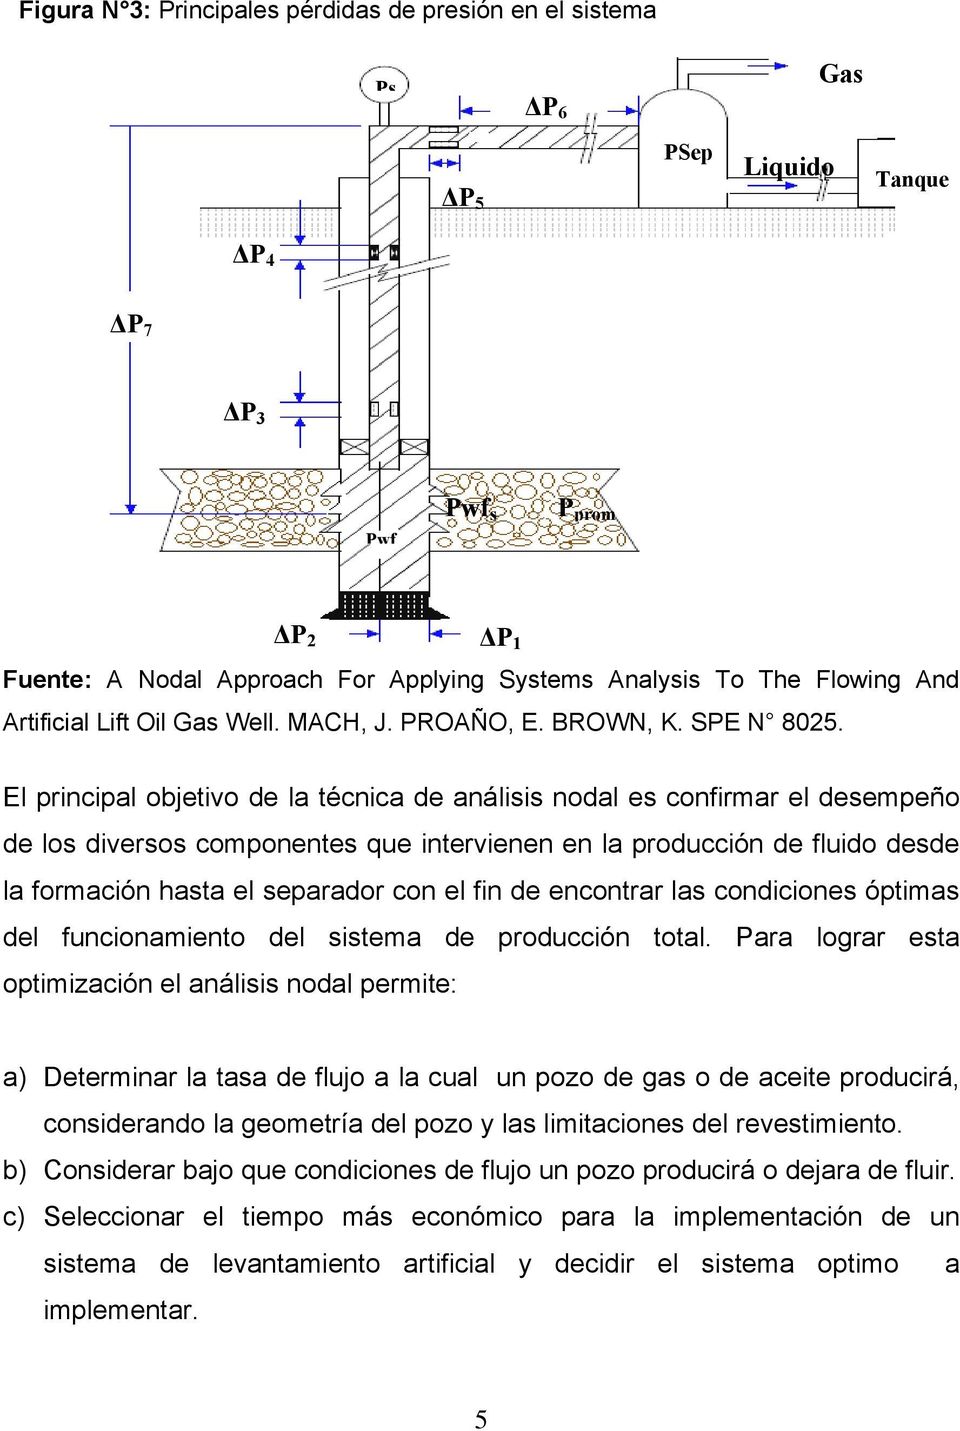 El principal objetivo de la técnica de análisis nodal es confirmar el desempeño de los diversos componentes que intervienen en la producción de fluido desde la formación hasta el separador con el fin